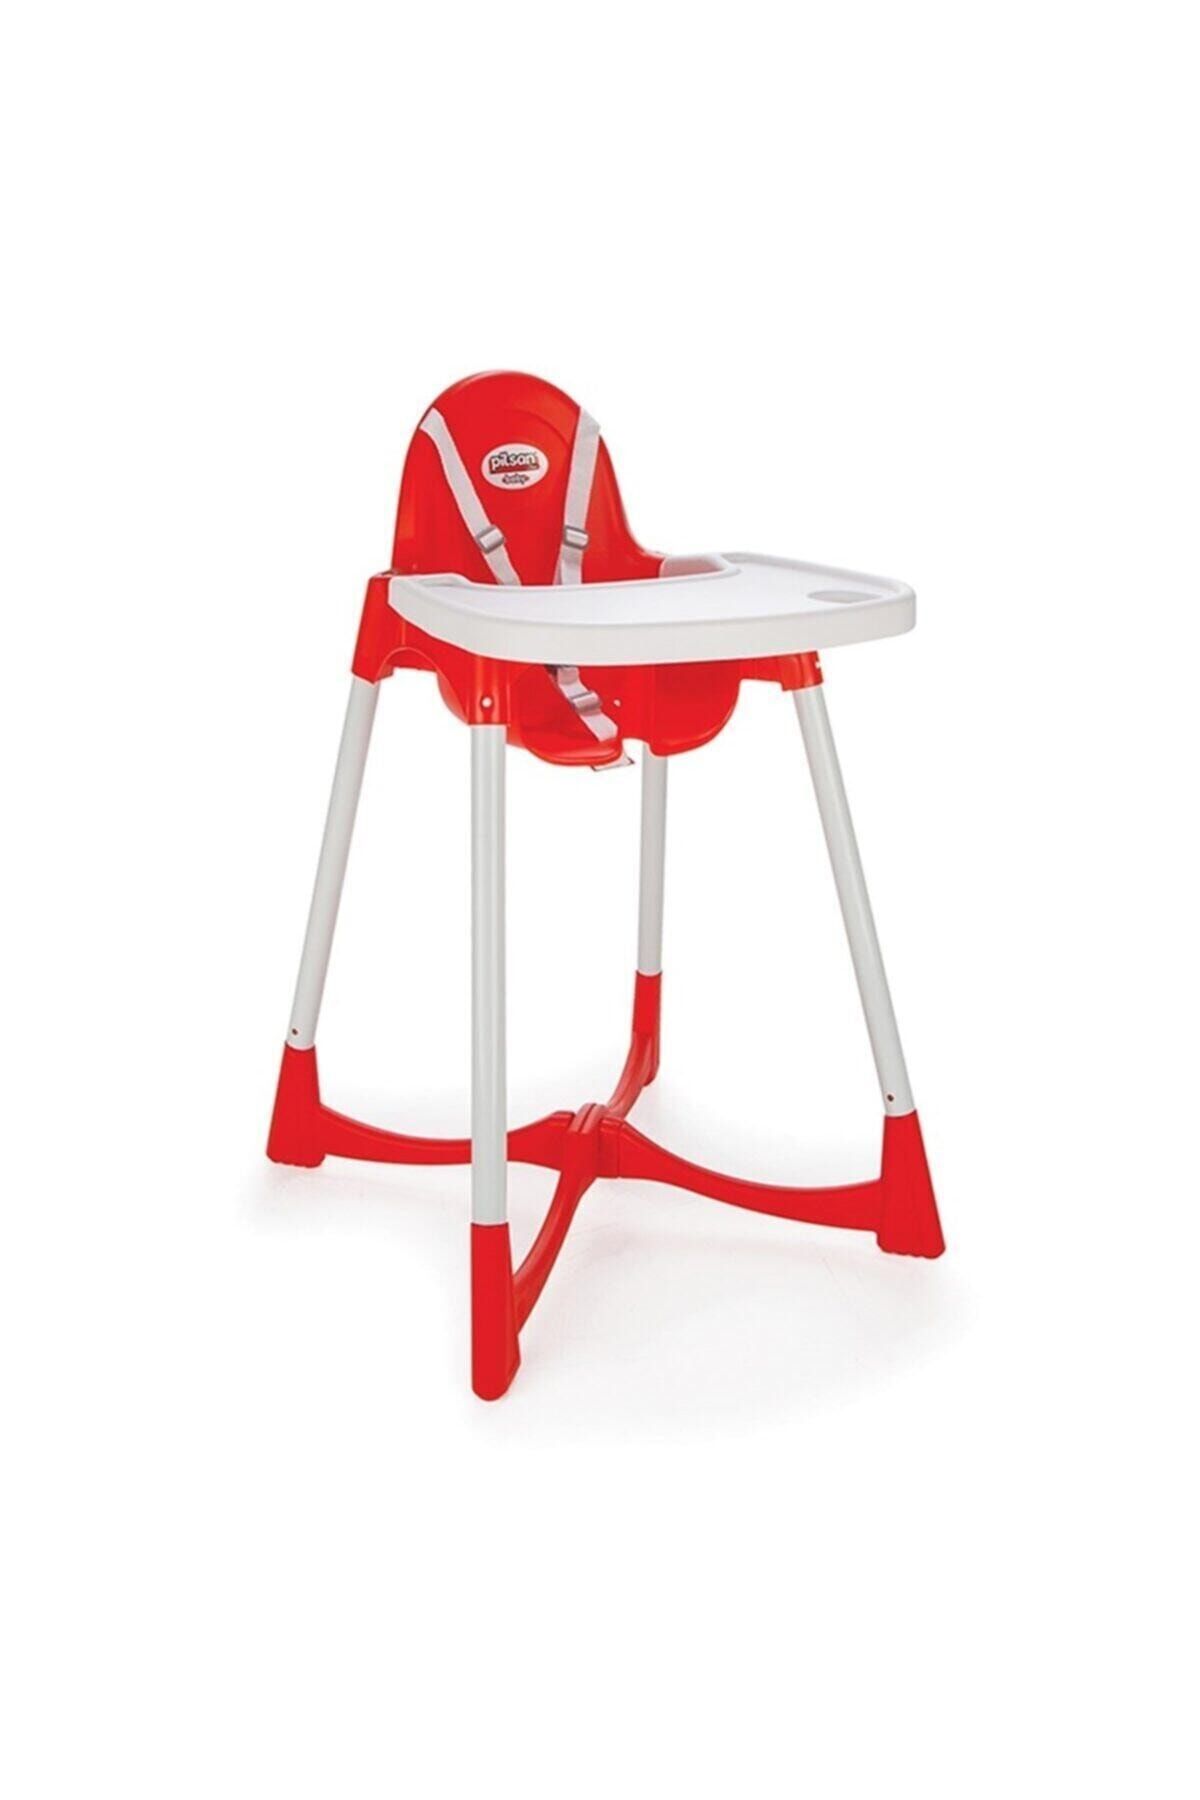 Genel Markalar Pilsan Pratik Bebek Mama Sandalyesi Kırmızı Beyaz Renk